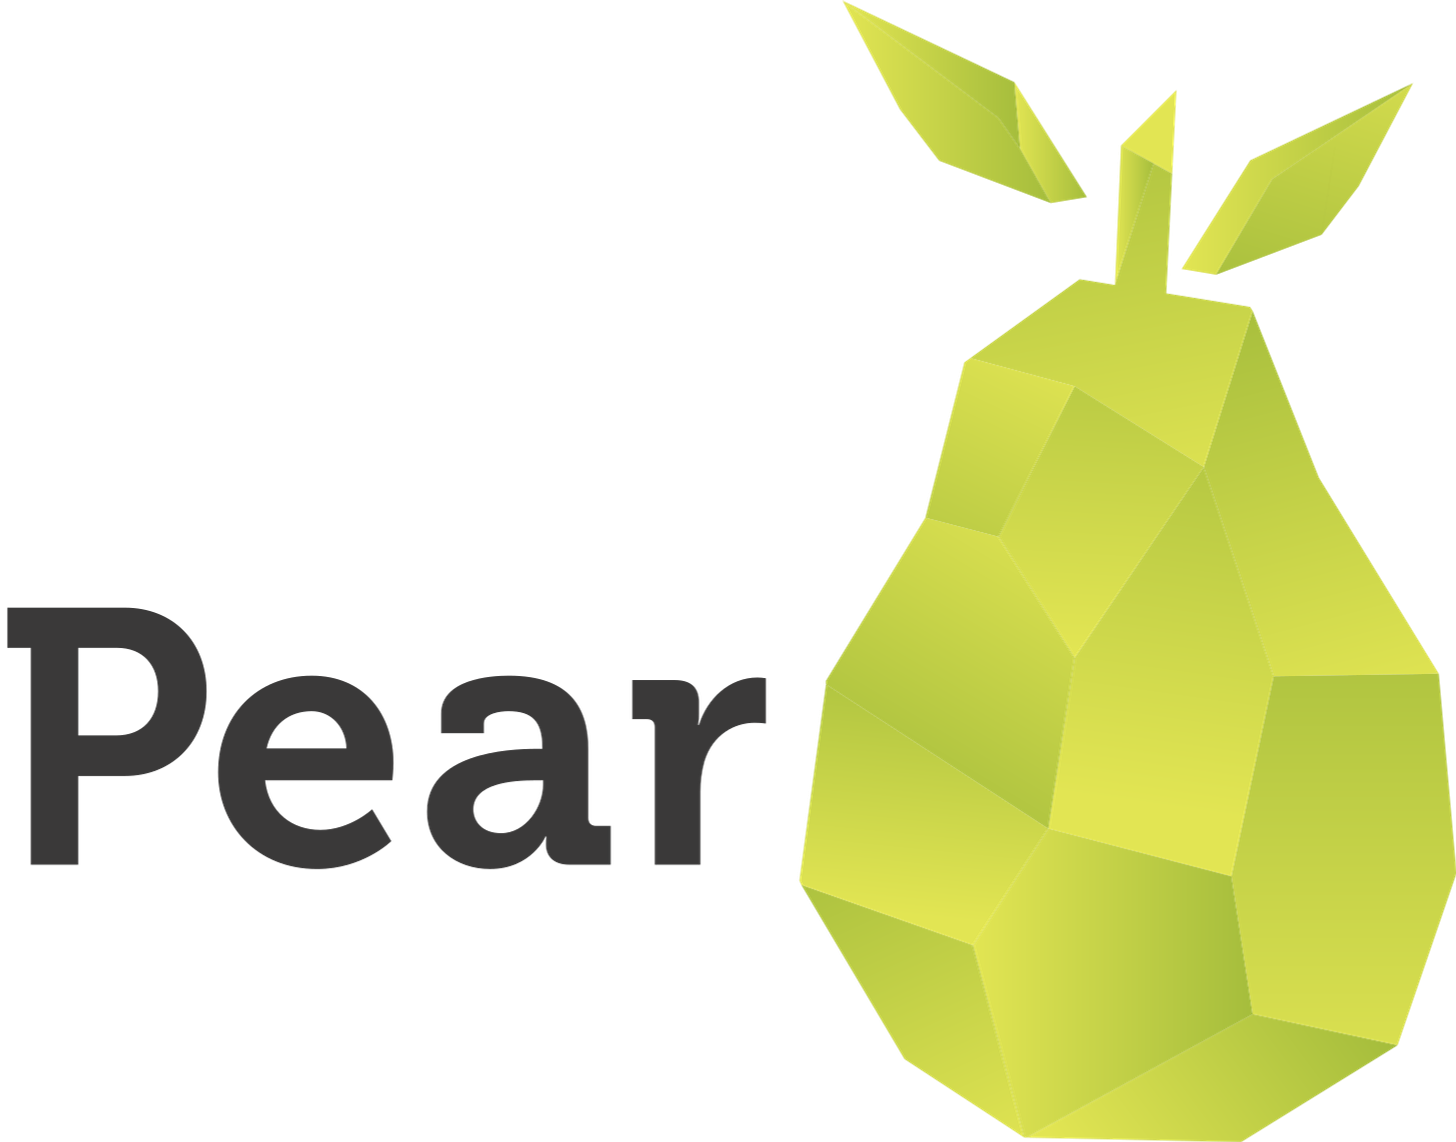 Pear VC - Wikipedia